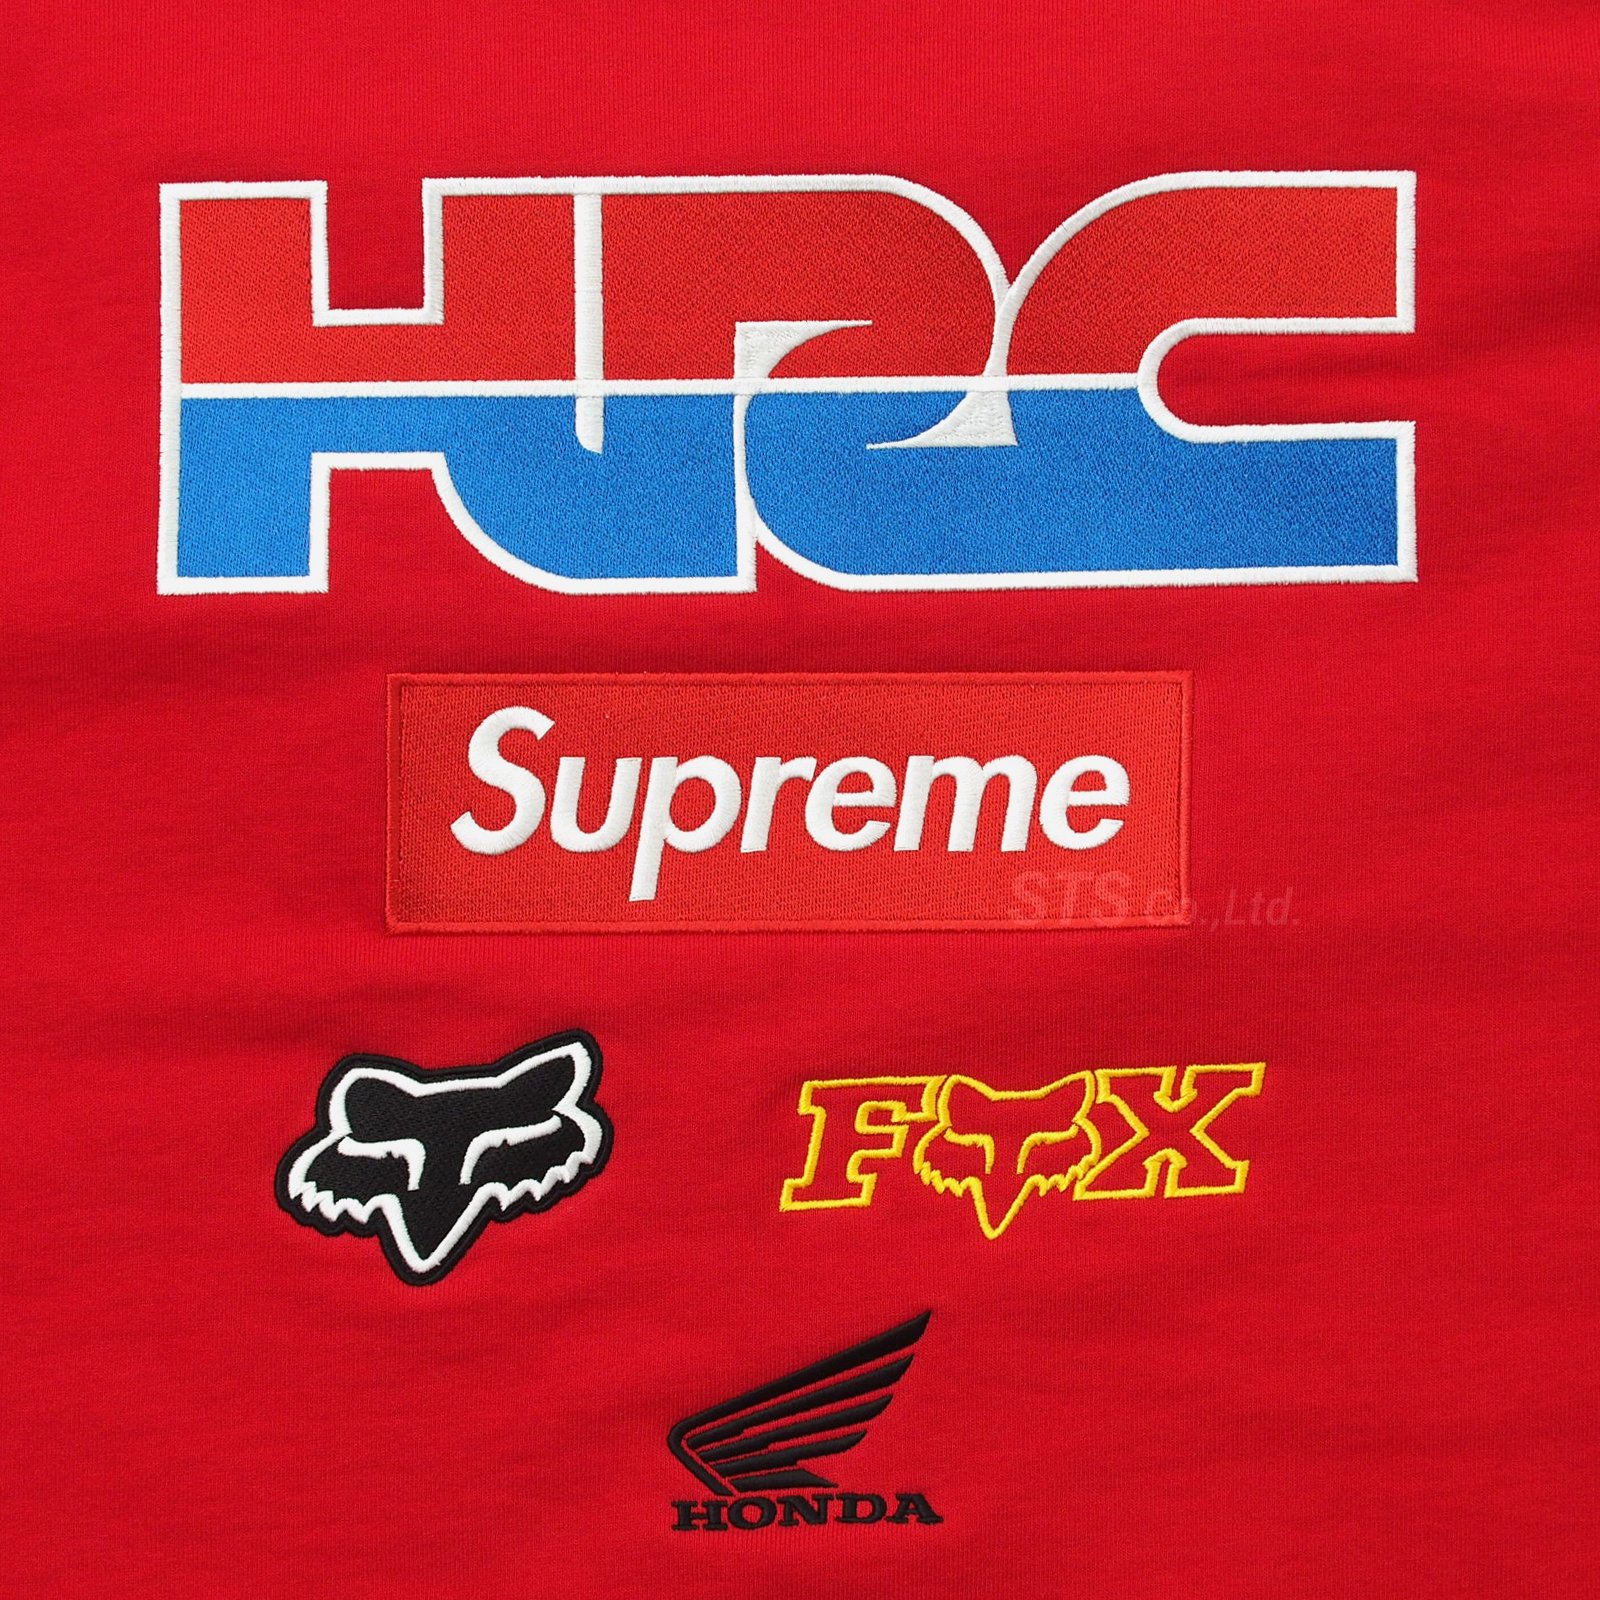 Supreme/Honda/Fox Racing Crewneck - UG.SHAFT